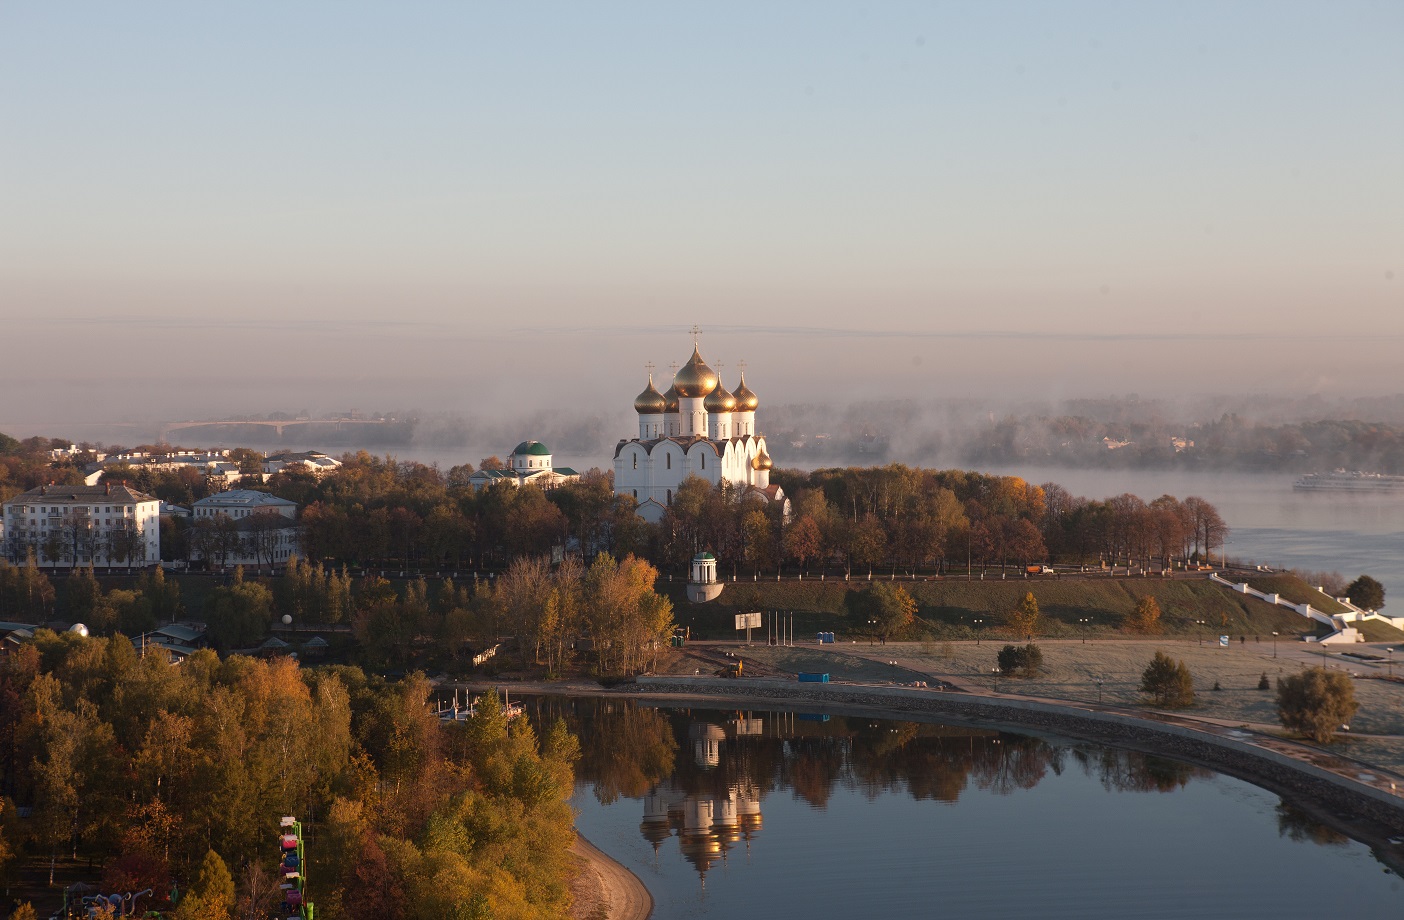 Vladimir Kremlin, Golden Ring of Russia - Stock Photo [81132178] - PIXTA